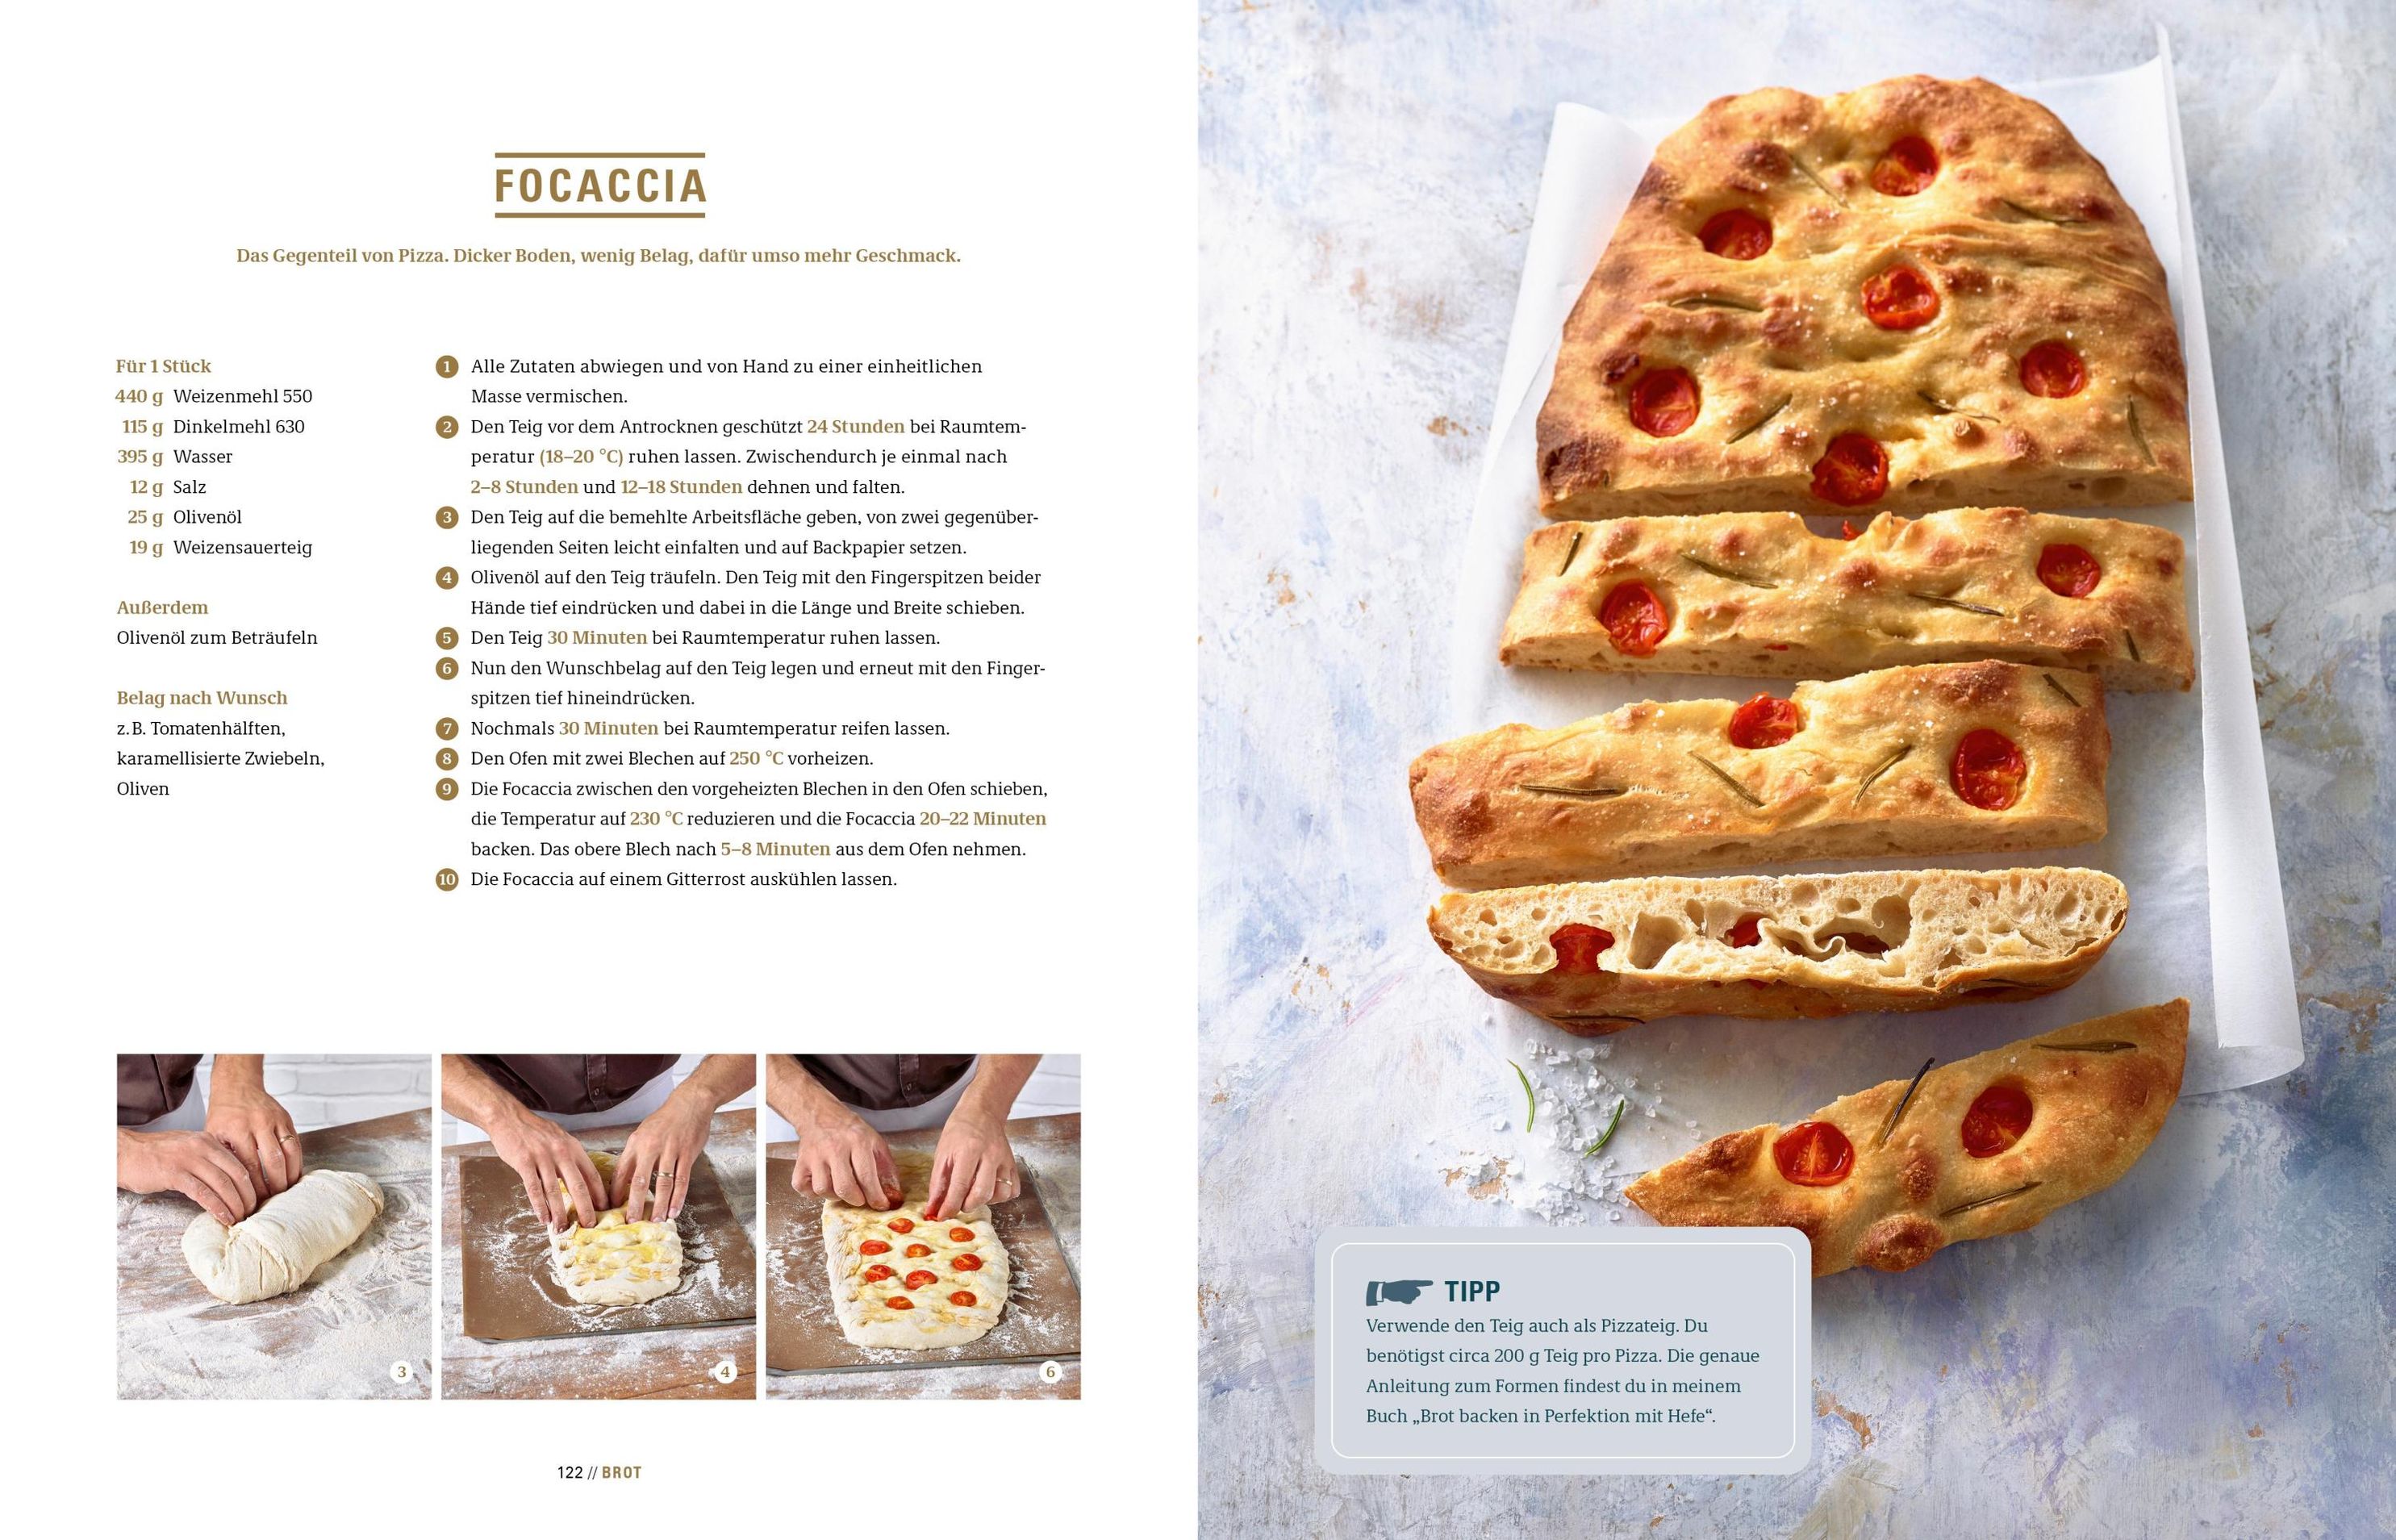 Brot backen in Perfektion mit Sauerteig Buch versandkostenfrei bestellen